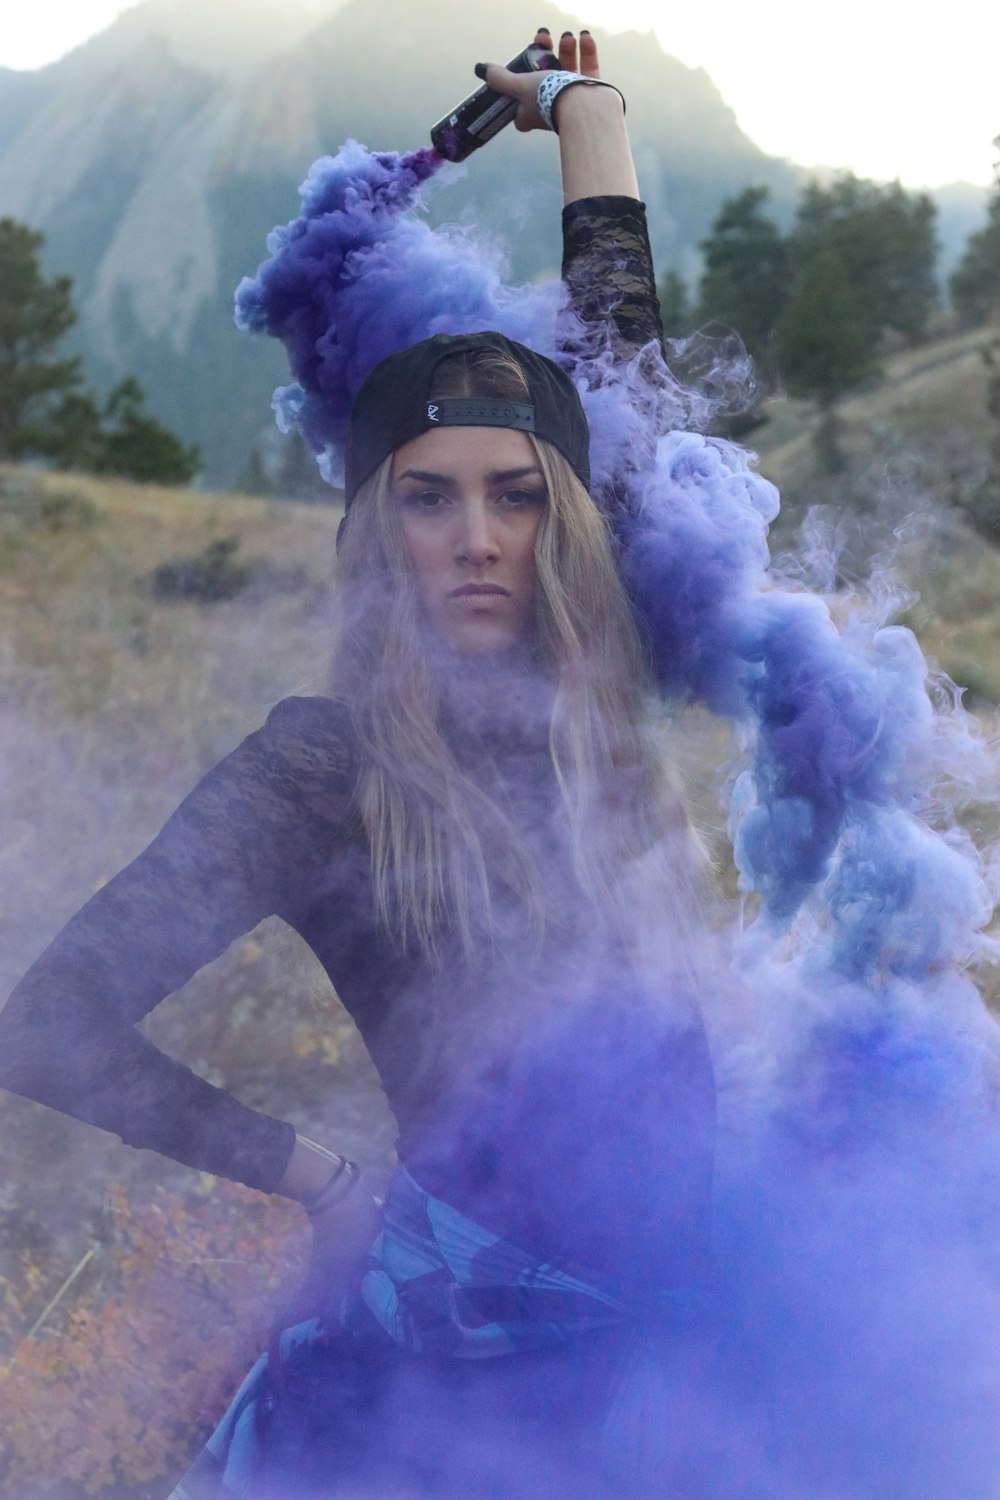 woman raising purple smoke bomb during daytime